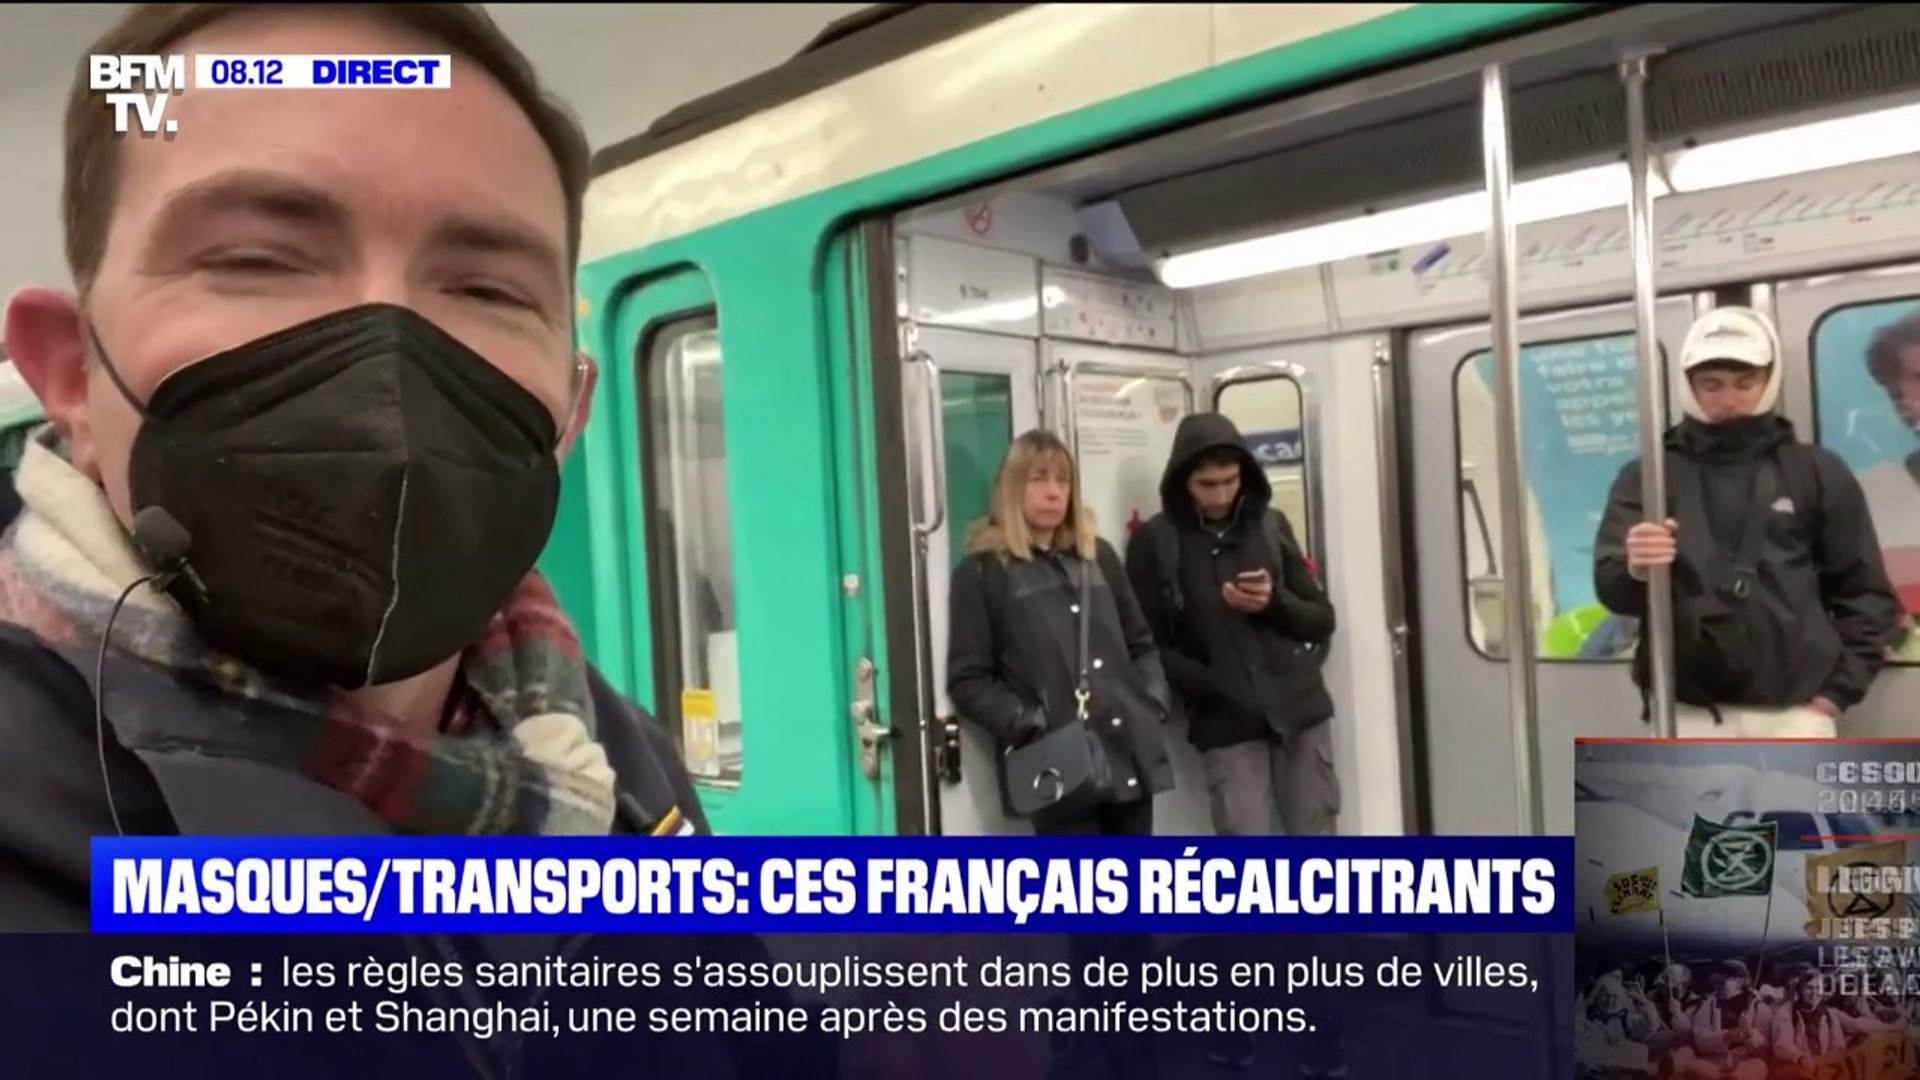 Port du masque dans les transports: les Français récalcitrants - Vidéo  Dailymotion